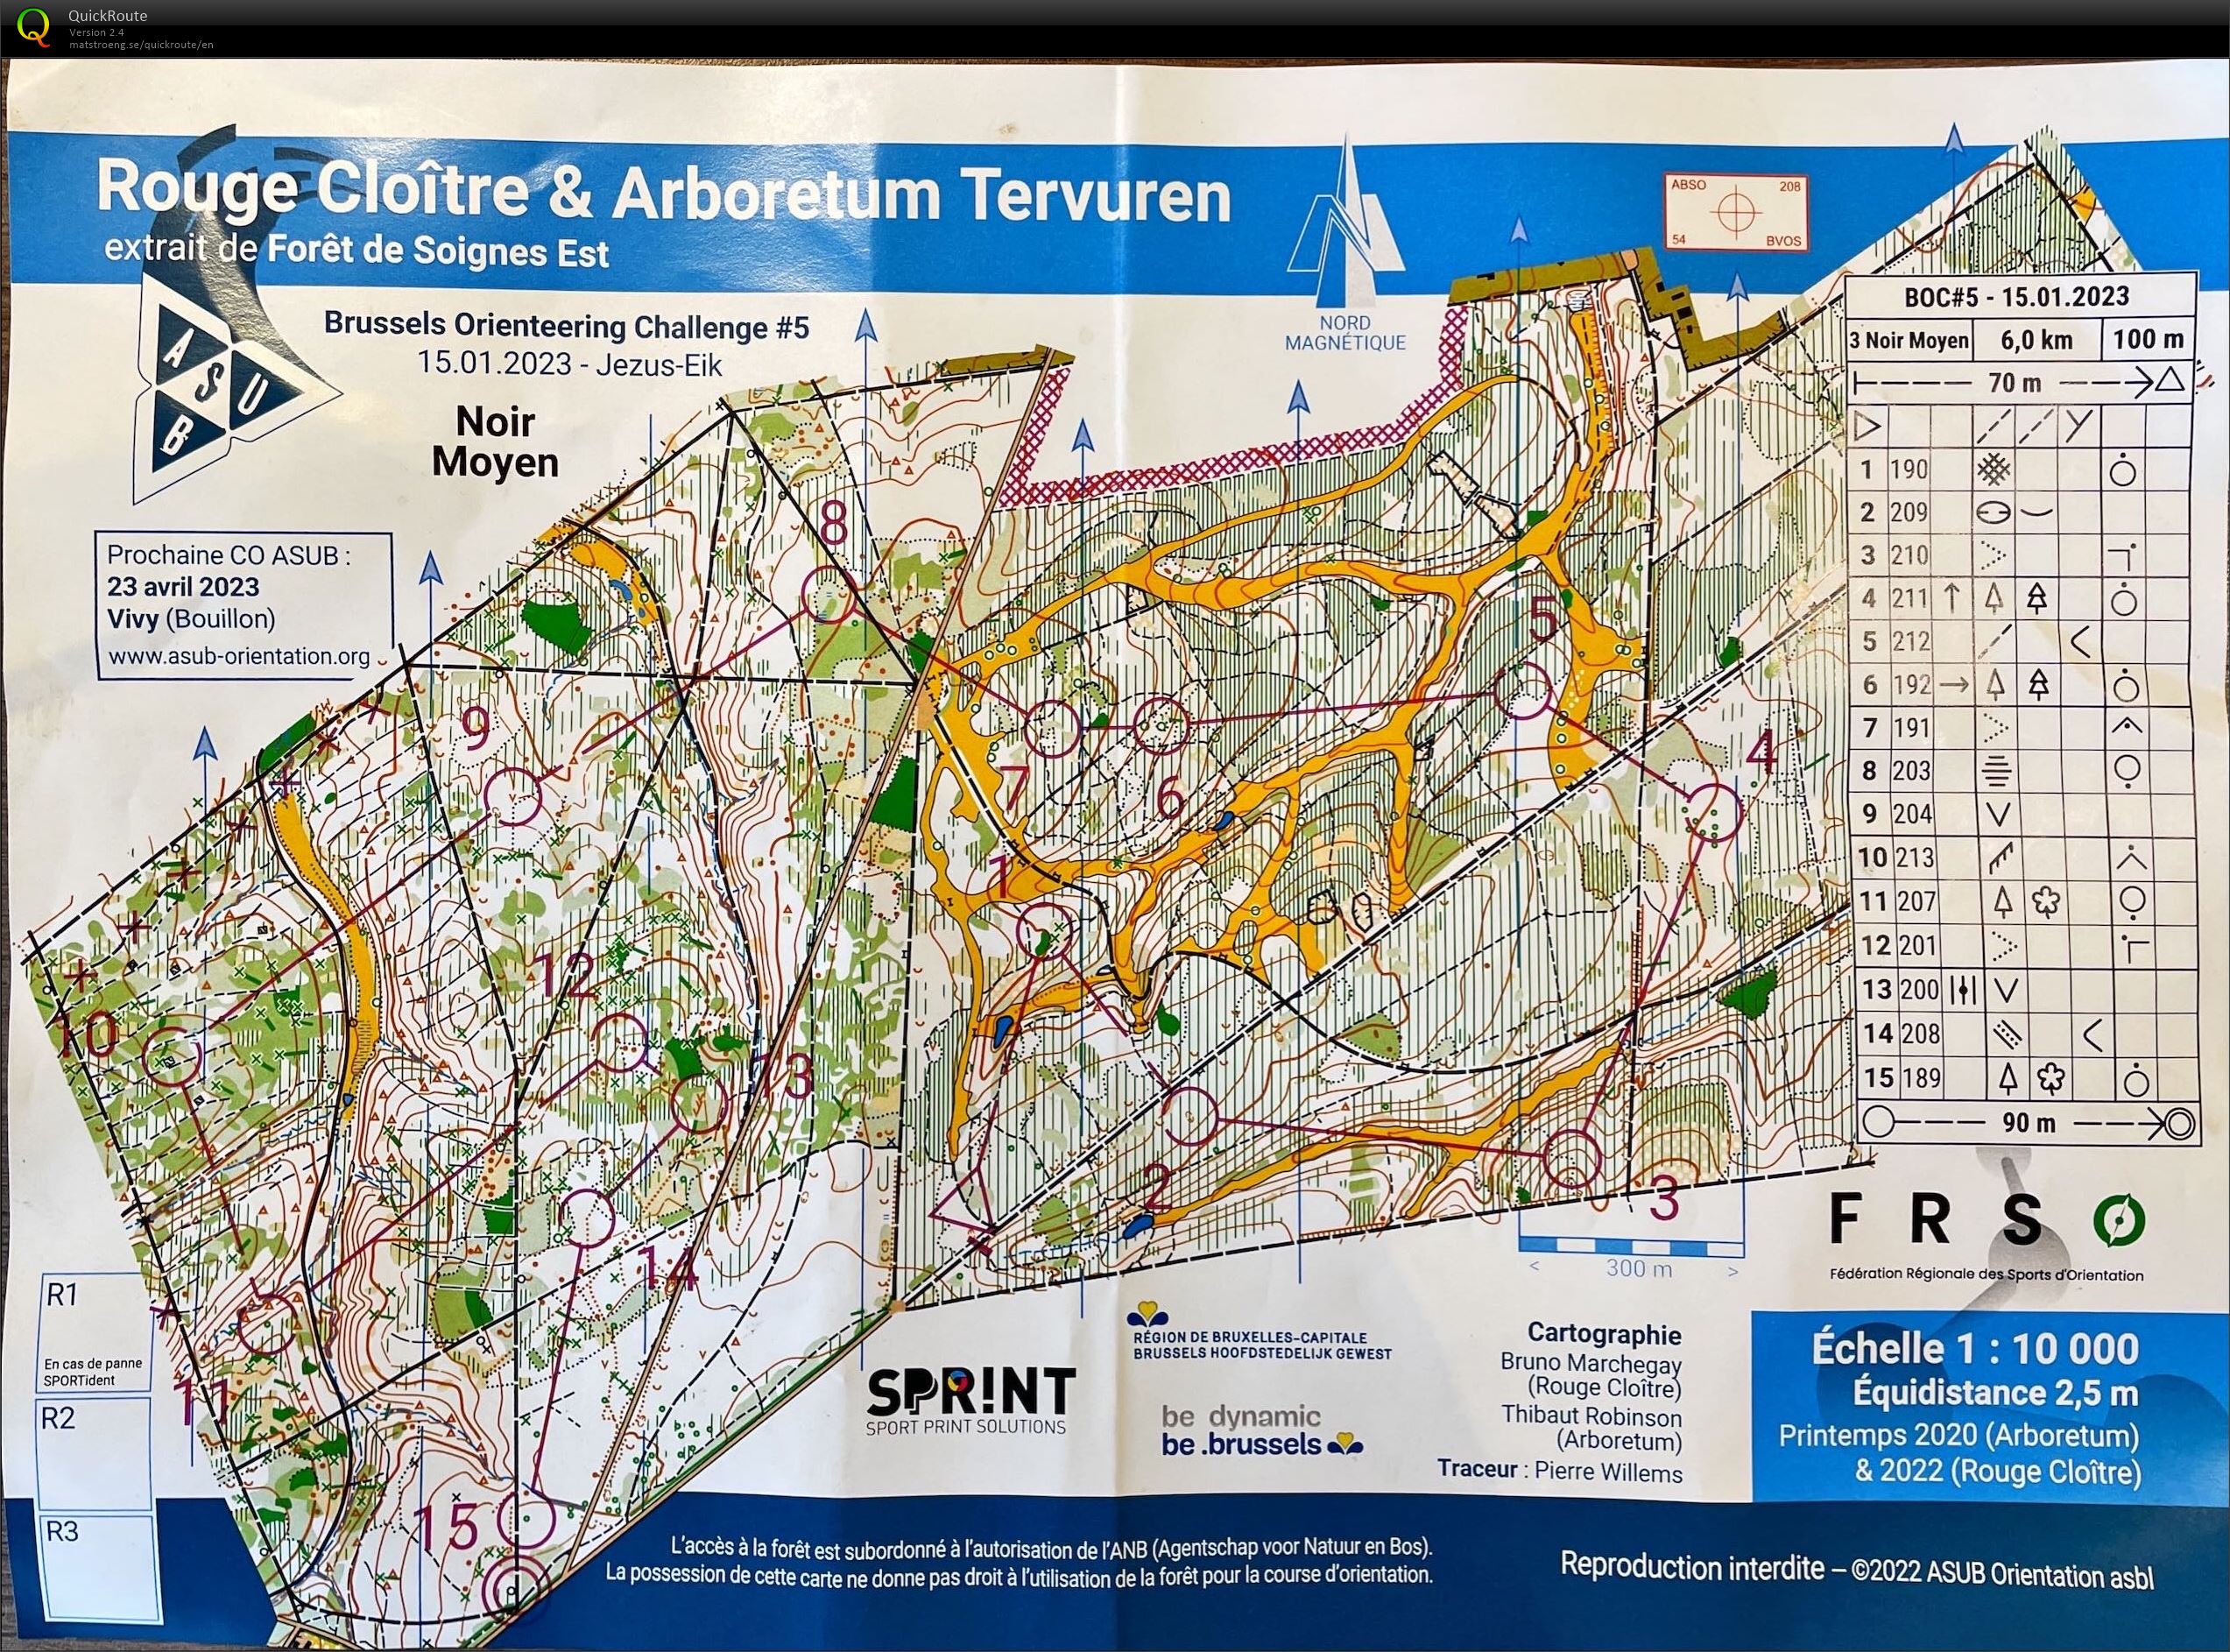 Brussels Orienteering Challenge #5: Rouge Cloitre & Arboretum Tervuren (15-01-2023)